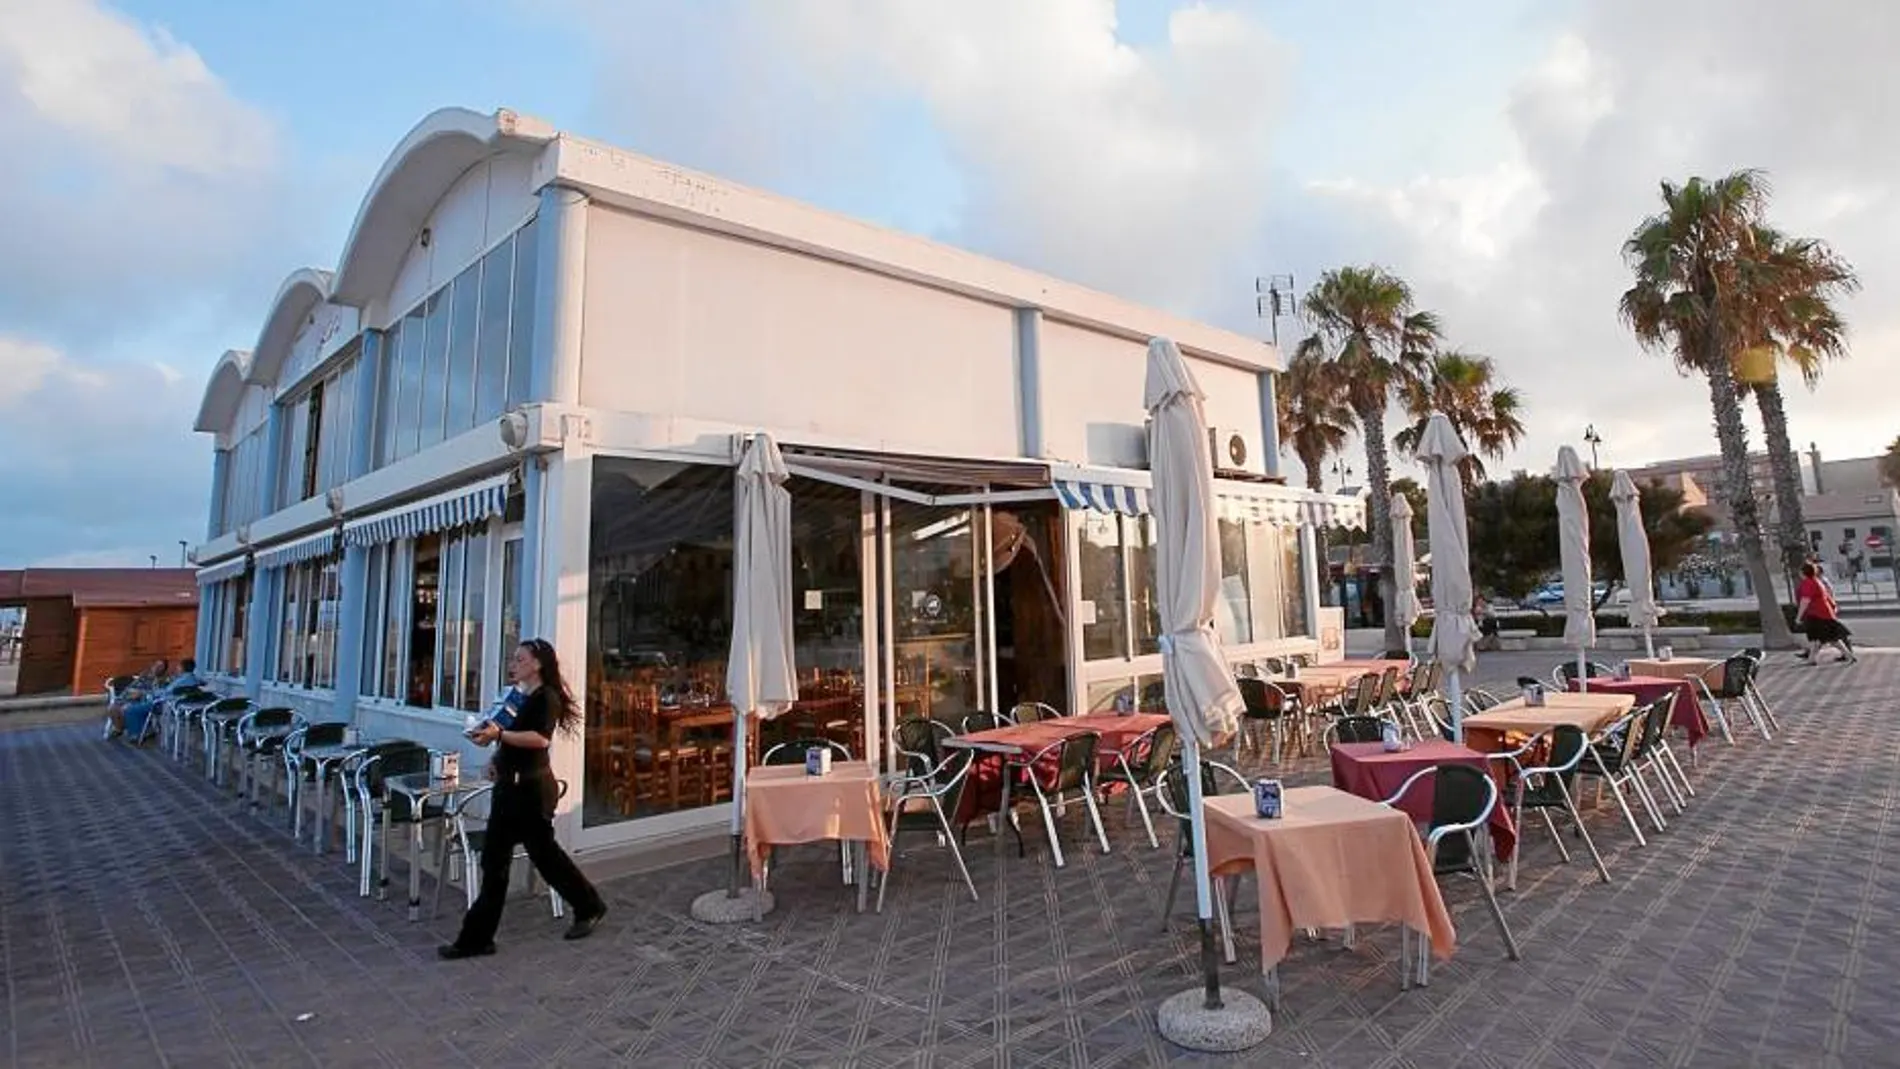 Los turistas gastan más dinero en comer en la zona de playa que en el centro de Valencia